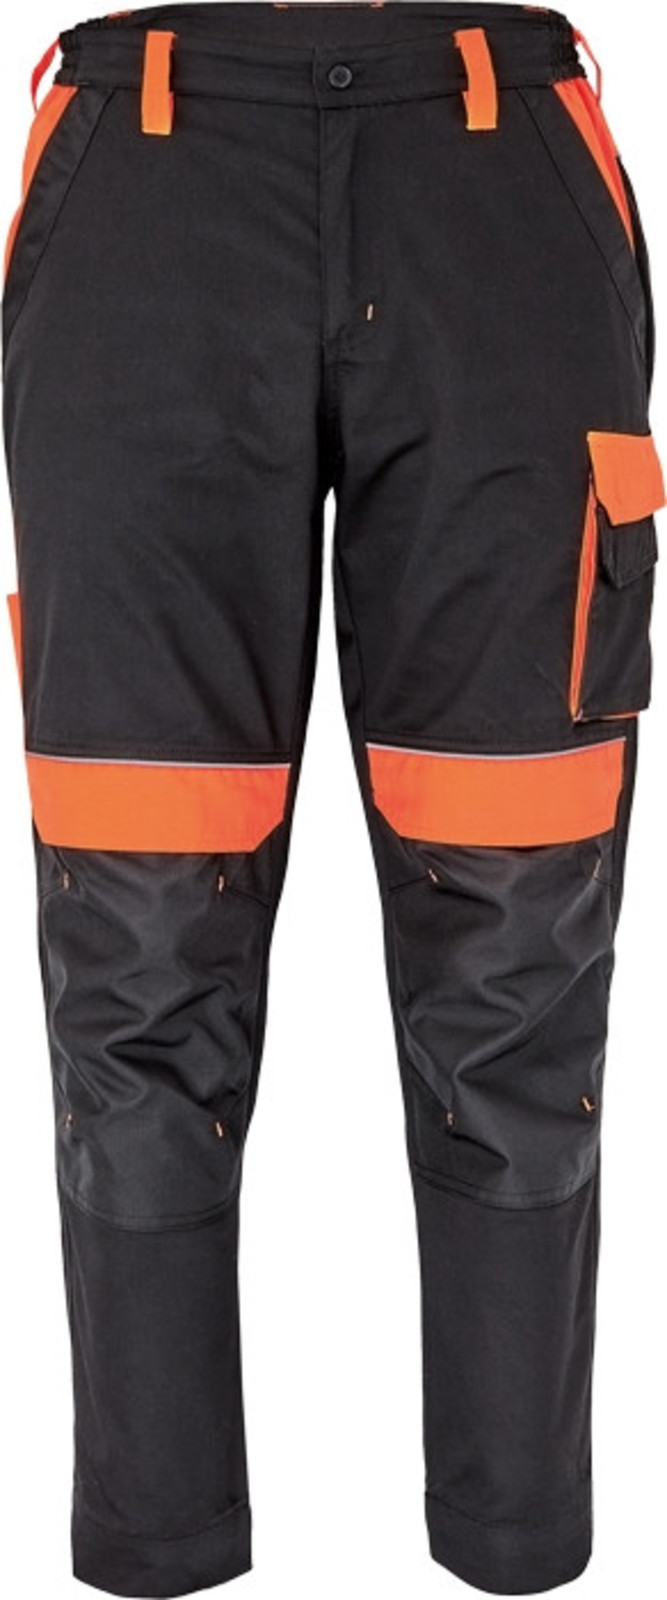 Pracovné nohavice Cerva Max Vivo pánske  - veľkosť: 56, farba: čierna/oranžová